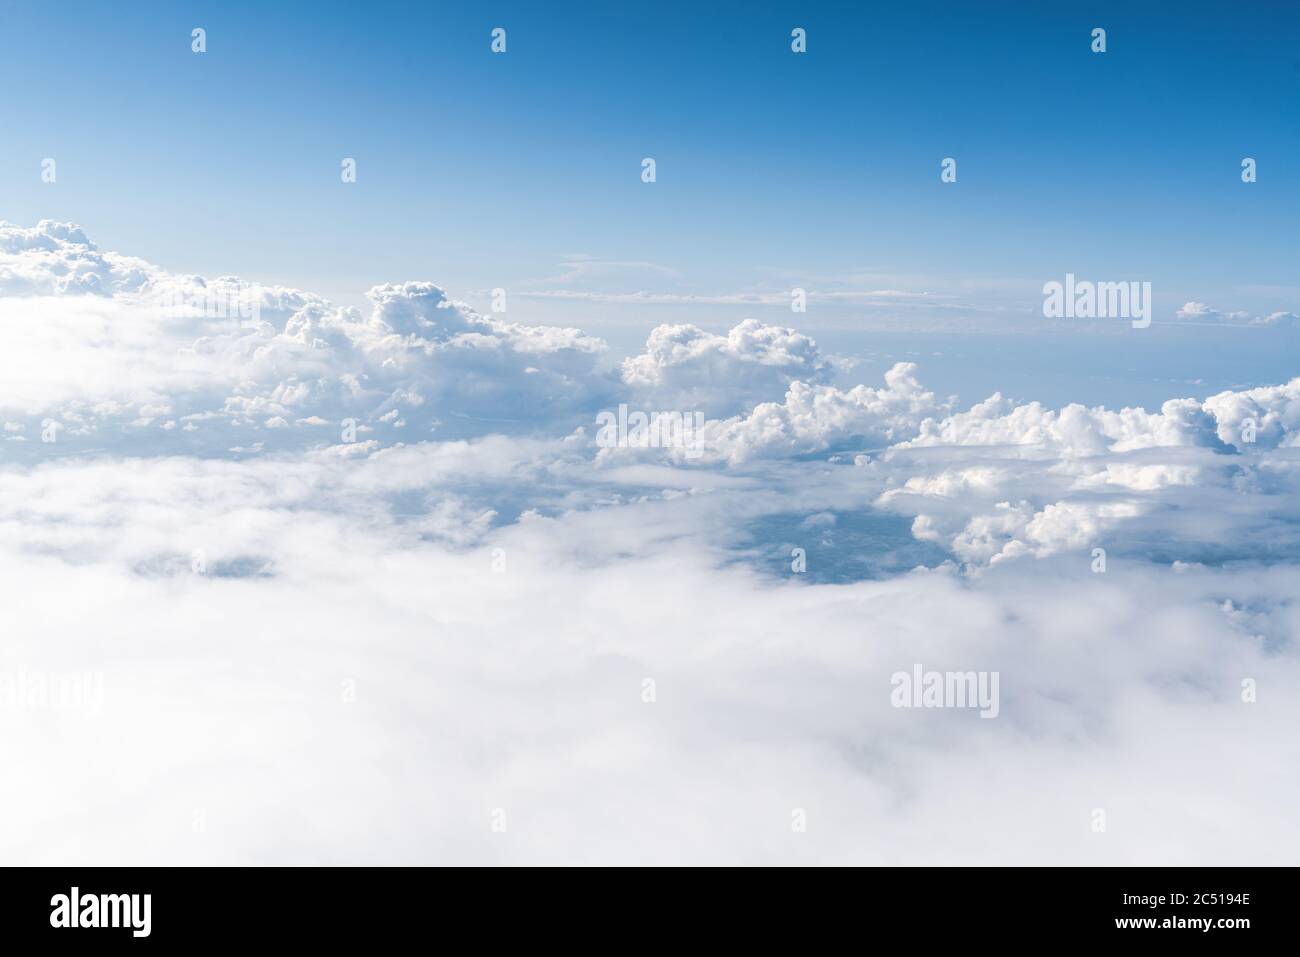 Vue panoramique de la lumière du jour et sur tous les nuages sous le ciel bleu, nuages de ciel et bannière de mer, concept de papier peint. Photo de haute qualité Banque D'Images